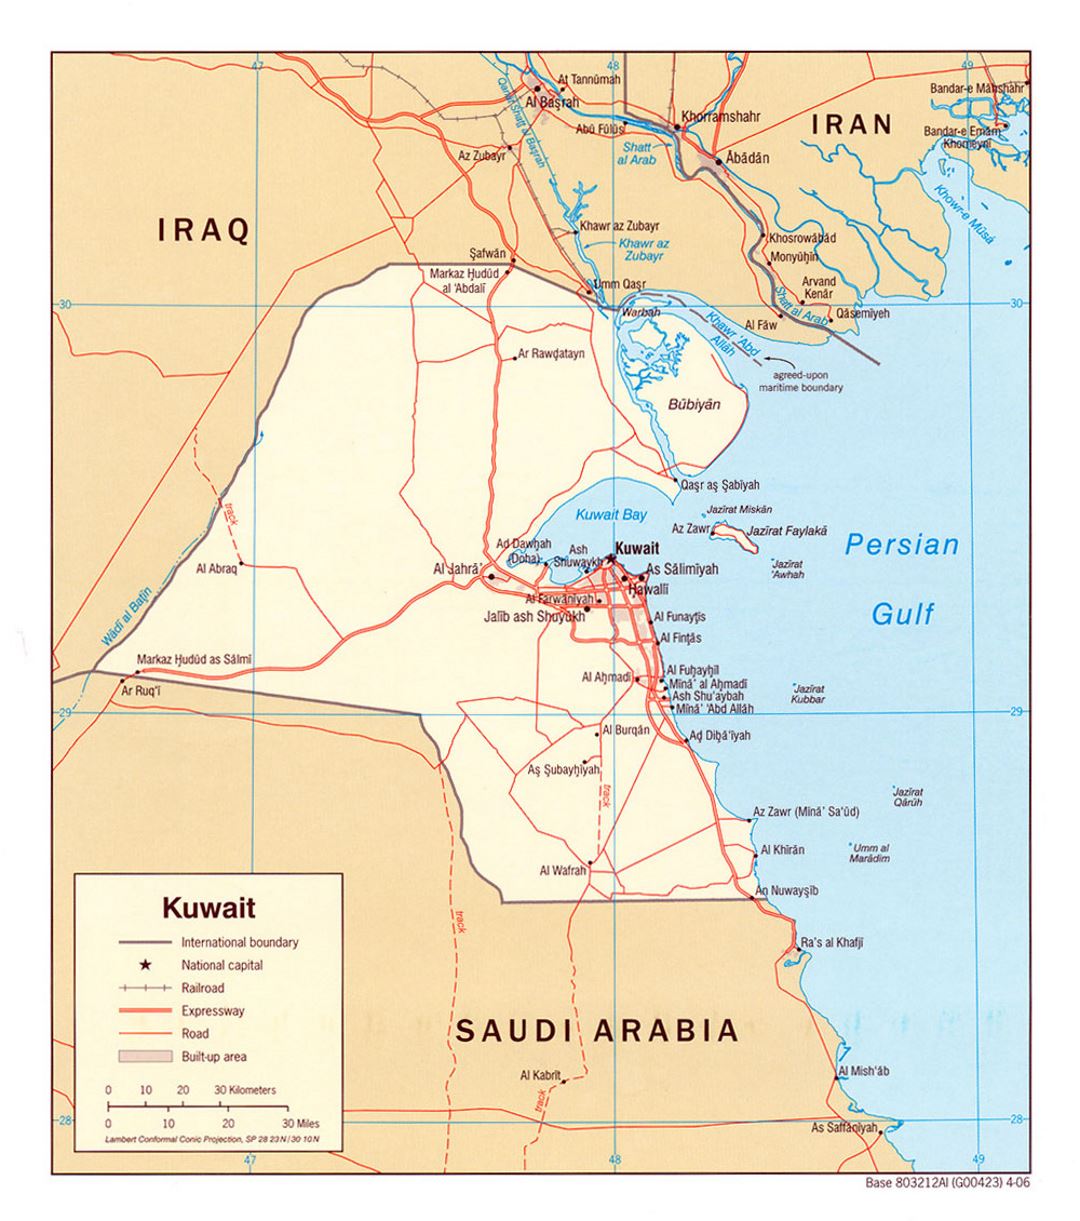 Detallado mapa político de Kuwait con carreteras, ferrocarriles y ciudades - 2006